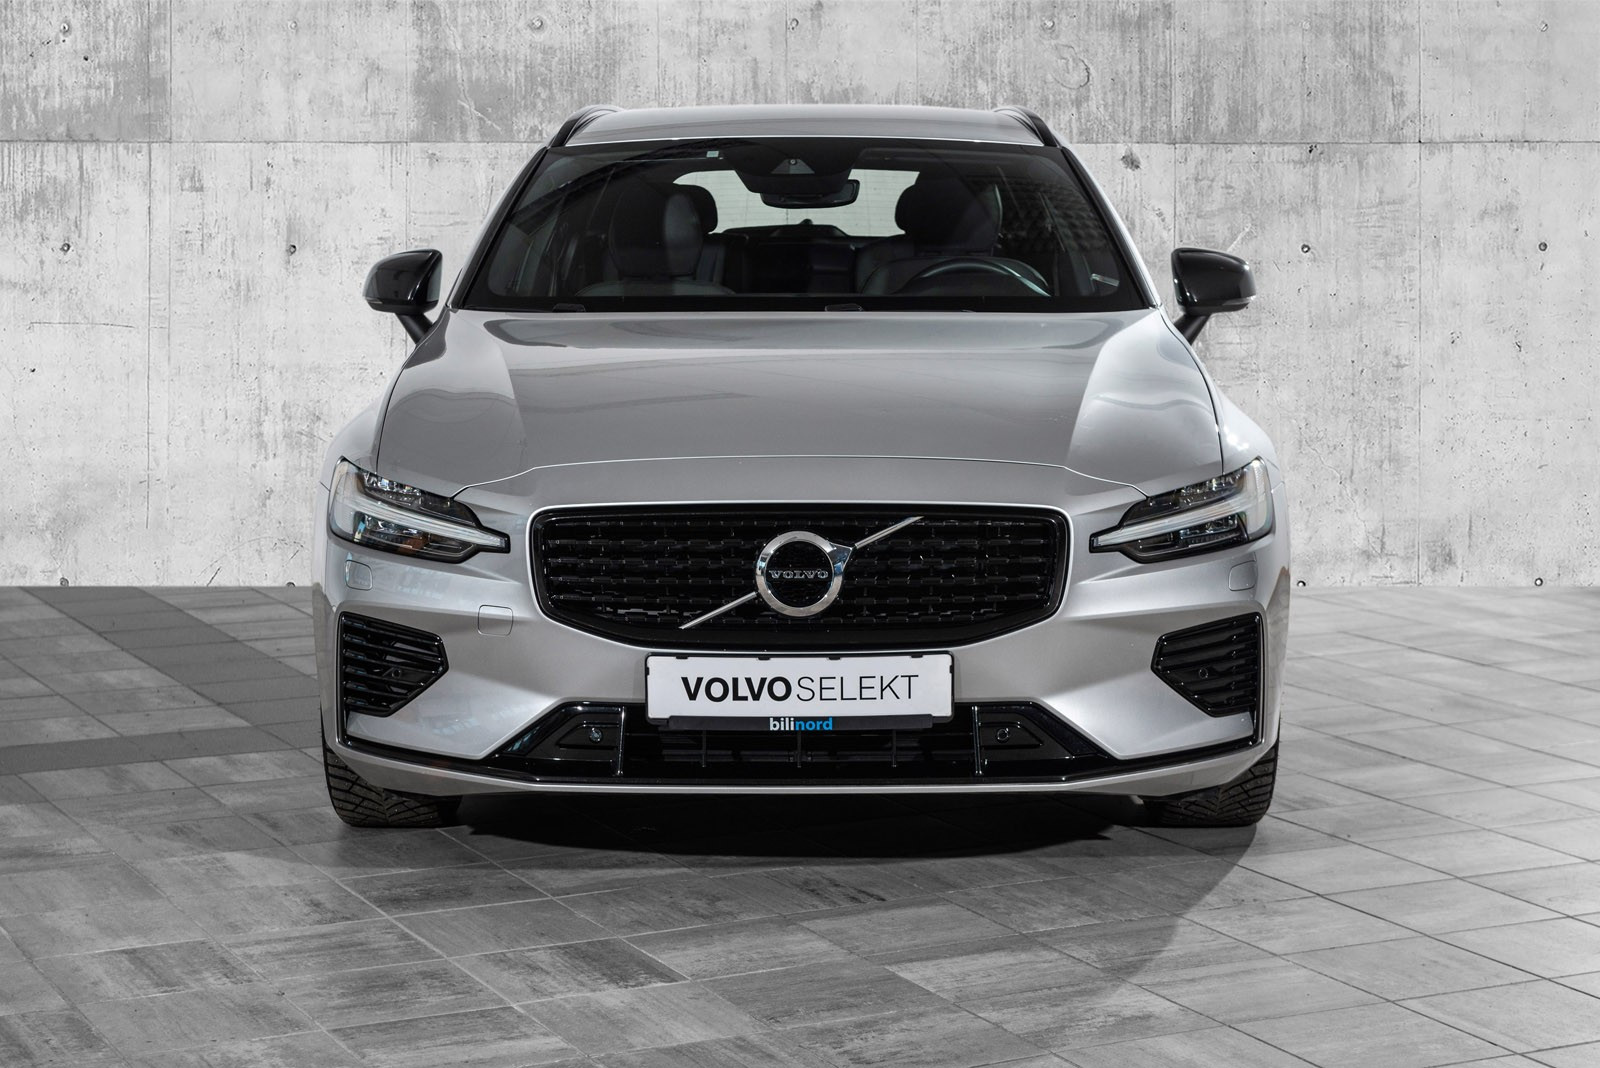 Mot et lite tillegg i prisen, kan denne bilen leveres med Volvo Selekt 7 år / 150.000 km garanti